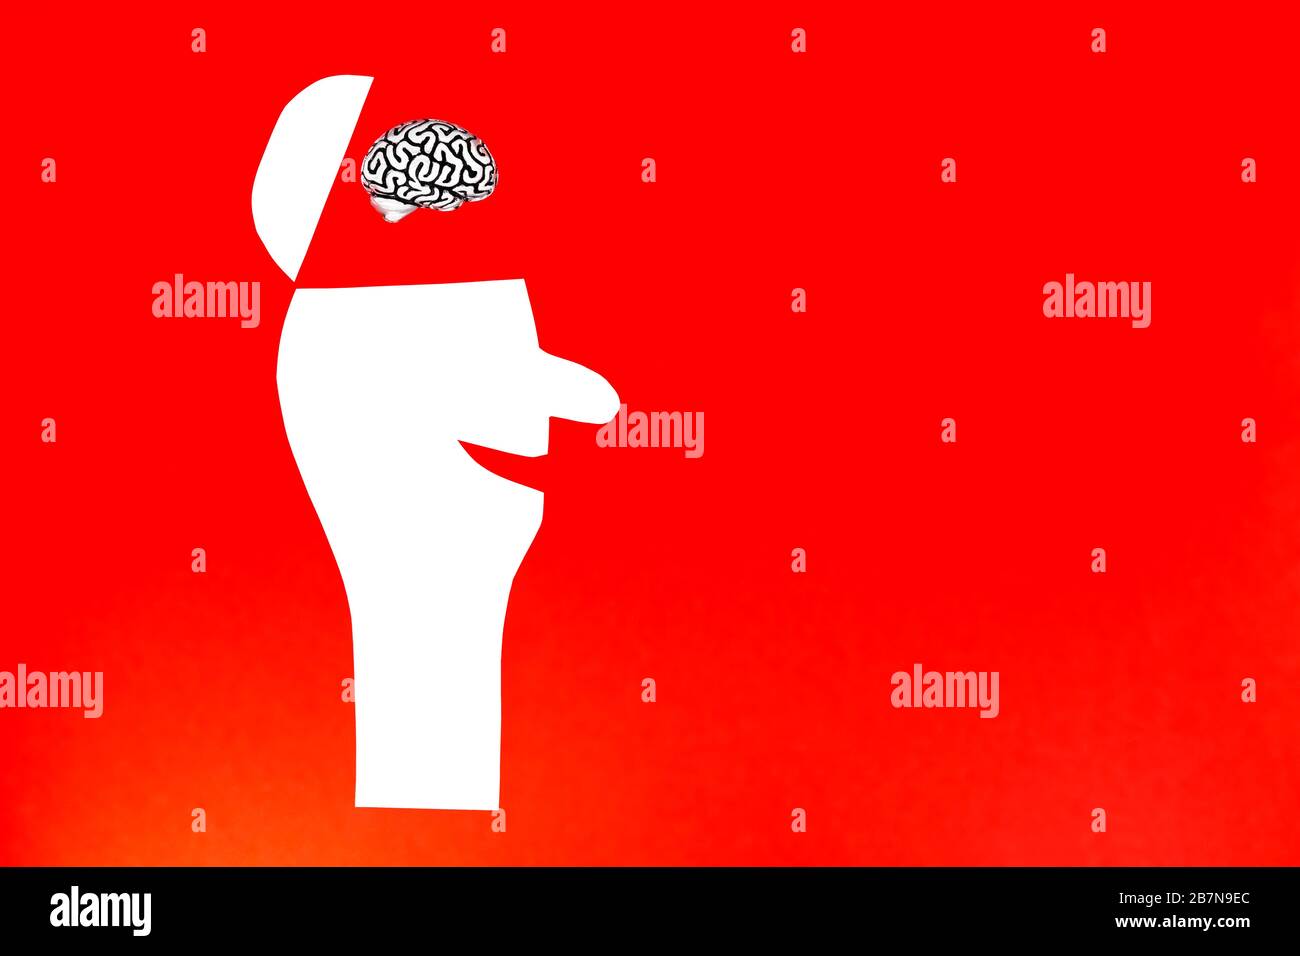 Petit modèle de cerveau humain inséré à l'intérieur d'une tête ouverte d'un homme heureux coupé de papier sur un fond rouge. Copier l'espace, le concept de bonheur. Banque D'Images